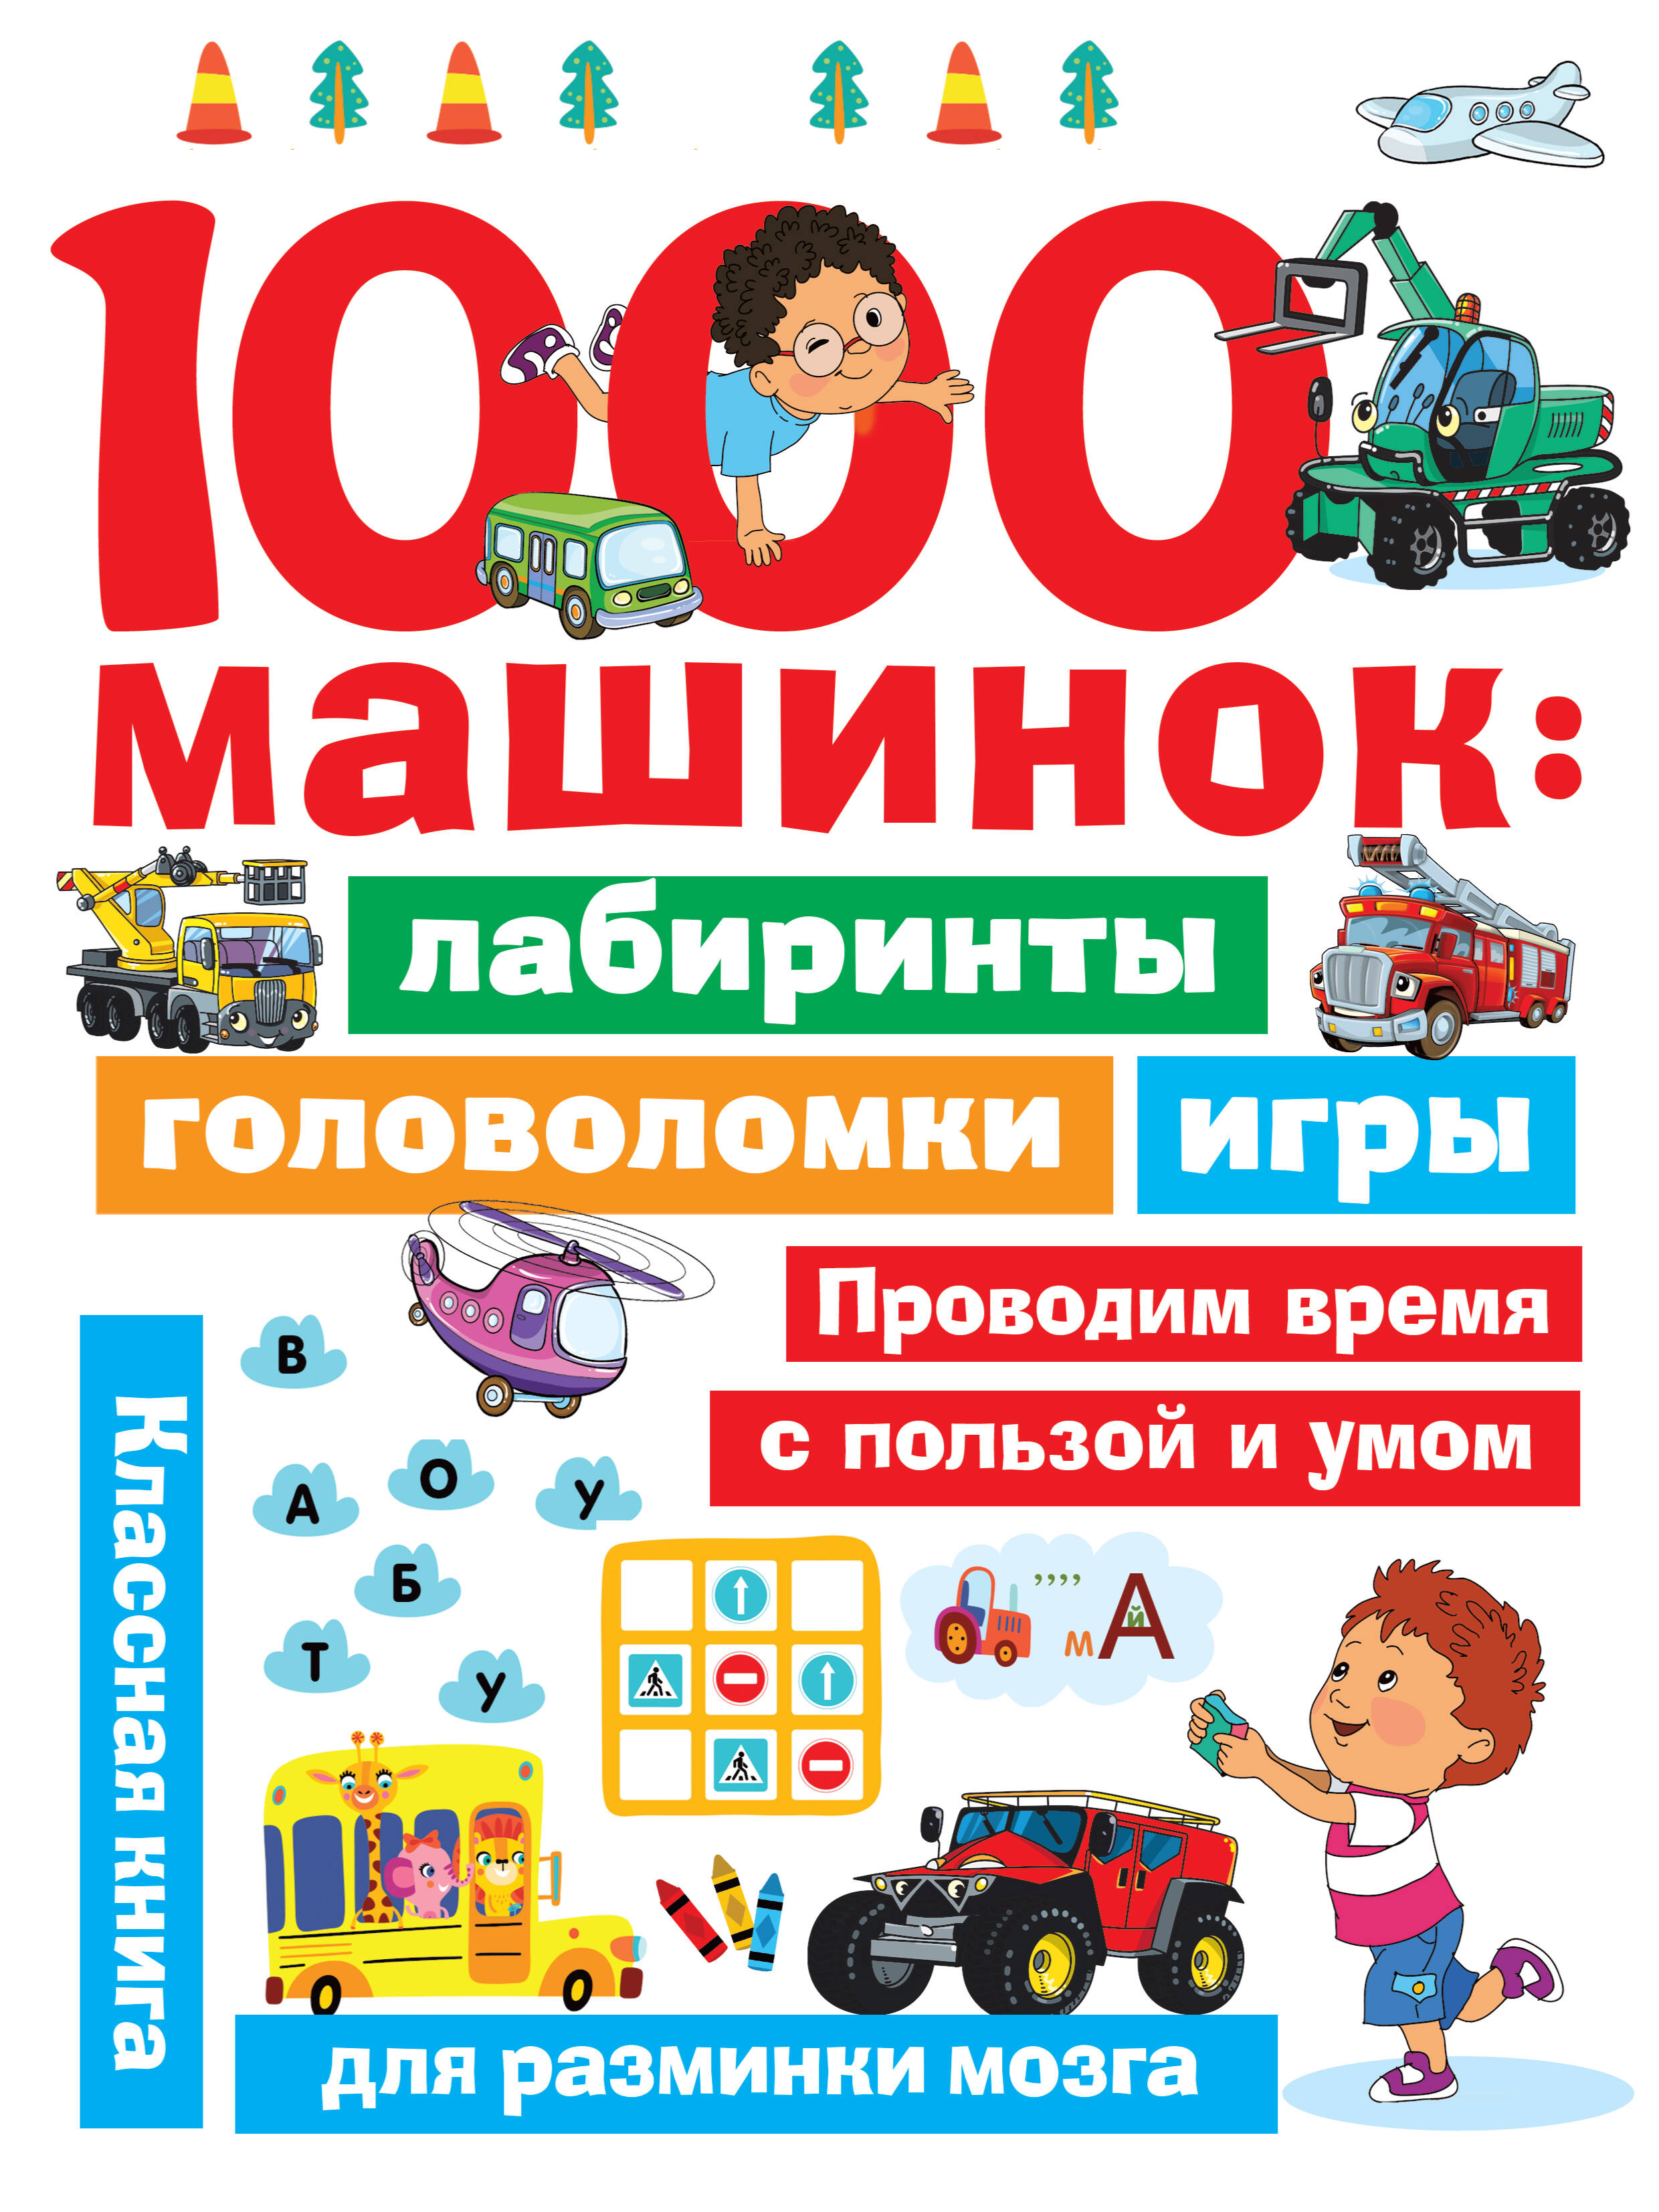 Дмитриева Валентина Геннадьевна 1000 машинок: лабиринты, головоломки, игры